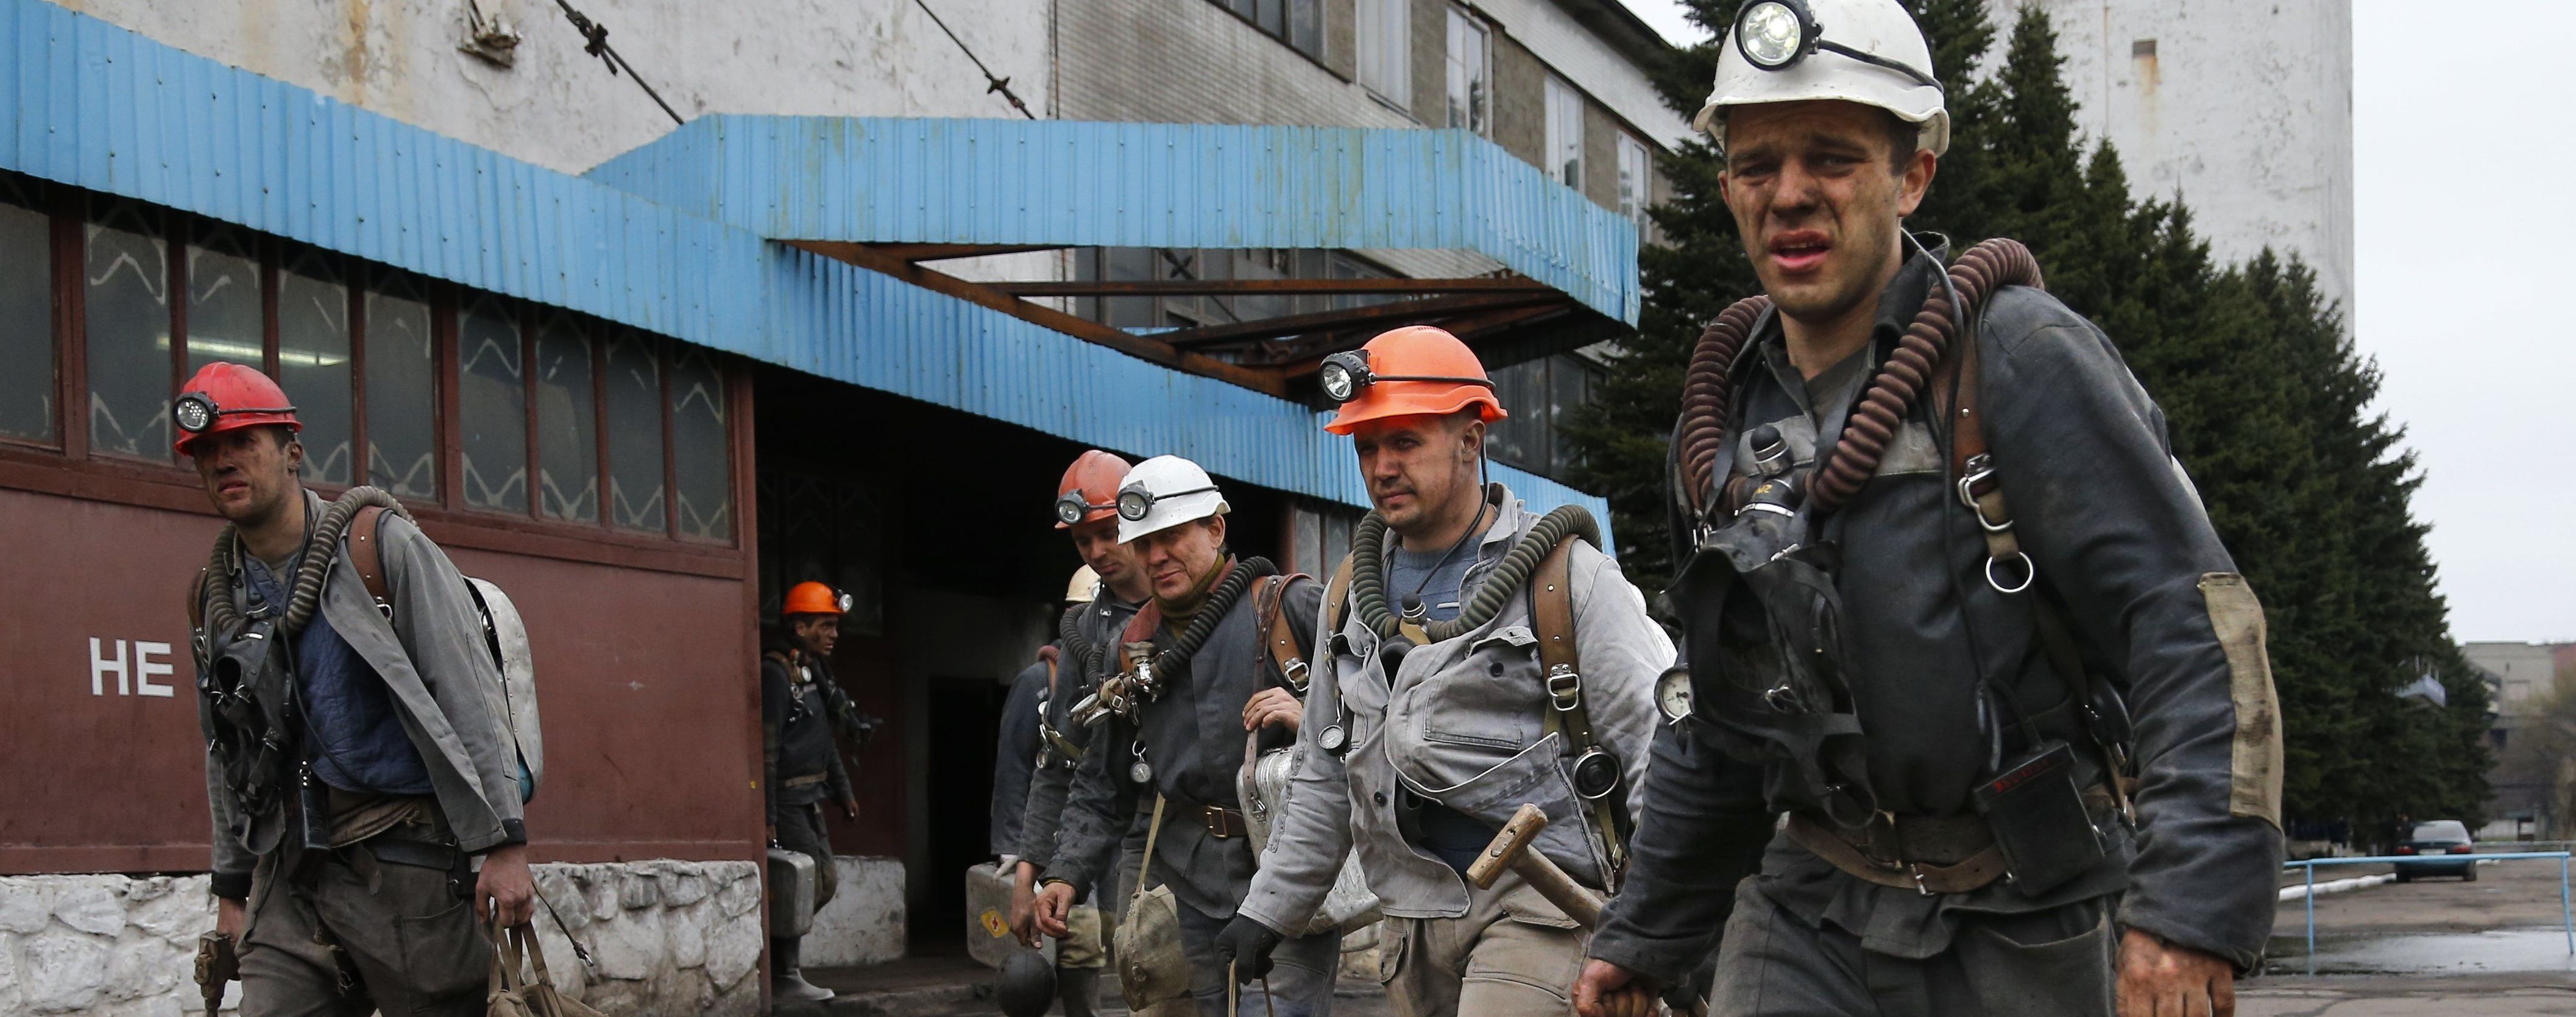 На цьому тижні очікуються мітинги шахтарів, сплановані в ДТЕК Ахметова - Герус